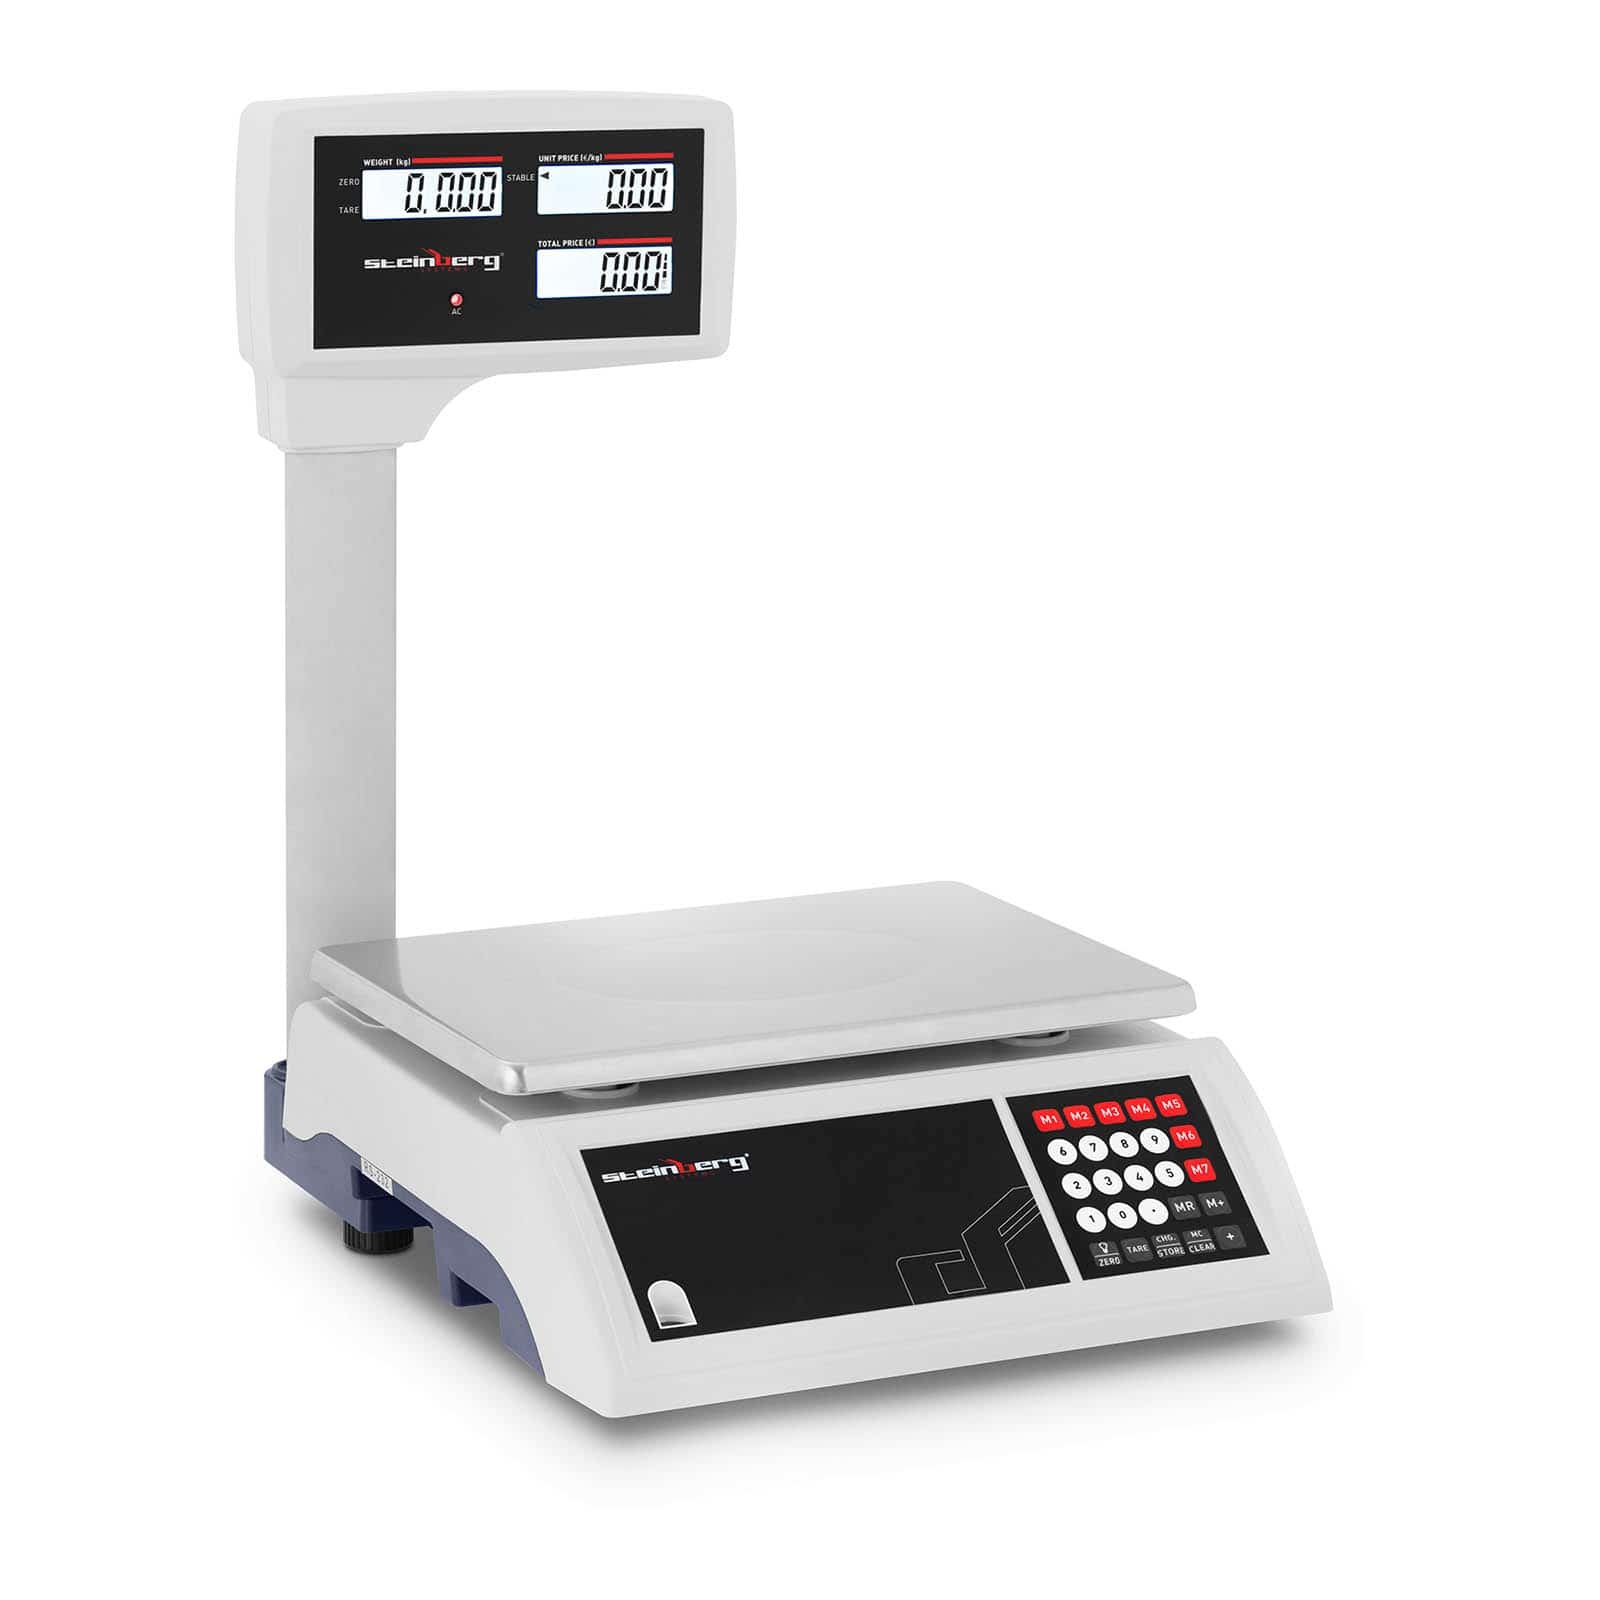 Kontrolní váha 30 kg / 5 g vysoký LCD displej - Obchodní váhy Steinberg Systems